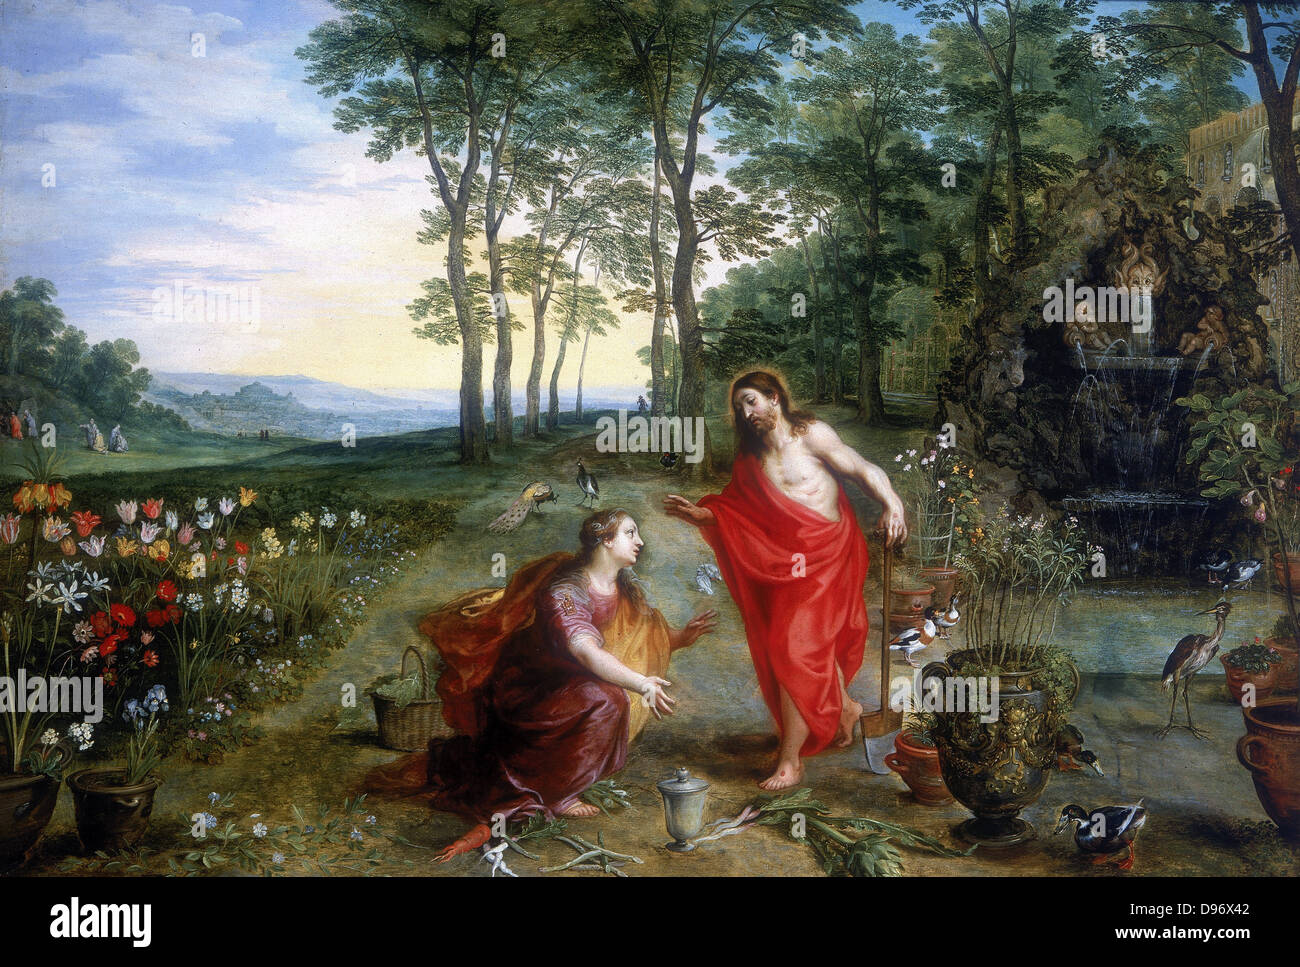 Noli me tangere" Öl auf Holz. Private Sammlung. Maria Magdalena, die Erste der auferstandenen Christus im Garten Gethsemane zu sehen. Jan Brueghel Breughel oder der Jüngere (1601-1678) und Hendrick van Balen. Öl auf Eichenholz. Stockfoto